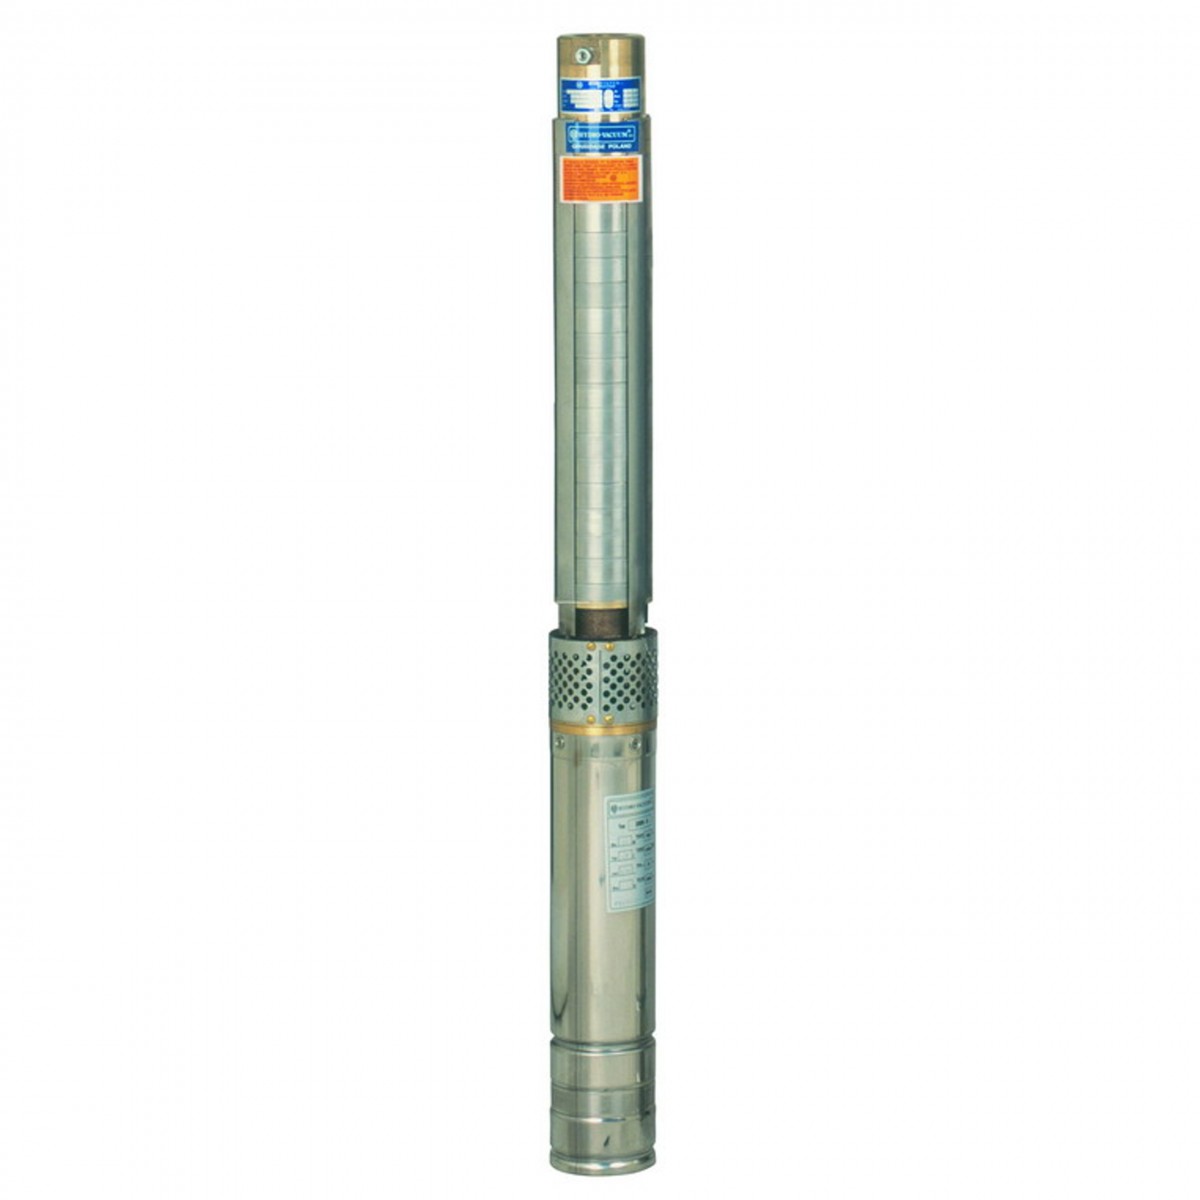 GAB 4.11 1,5kW pompa głębinowa Hydro-Vacuum